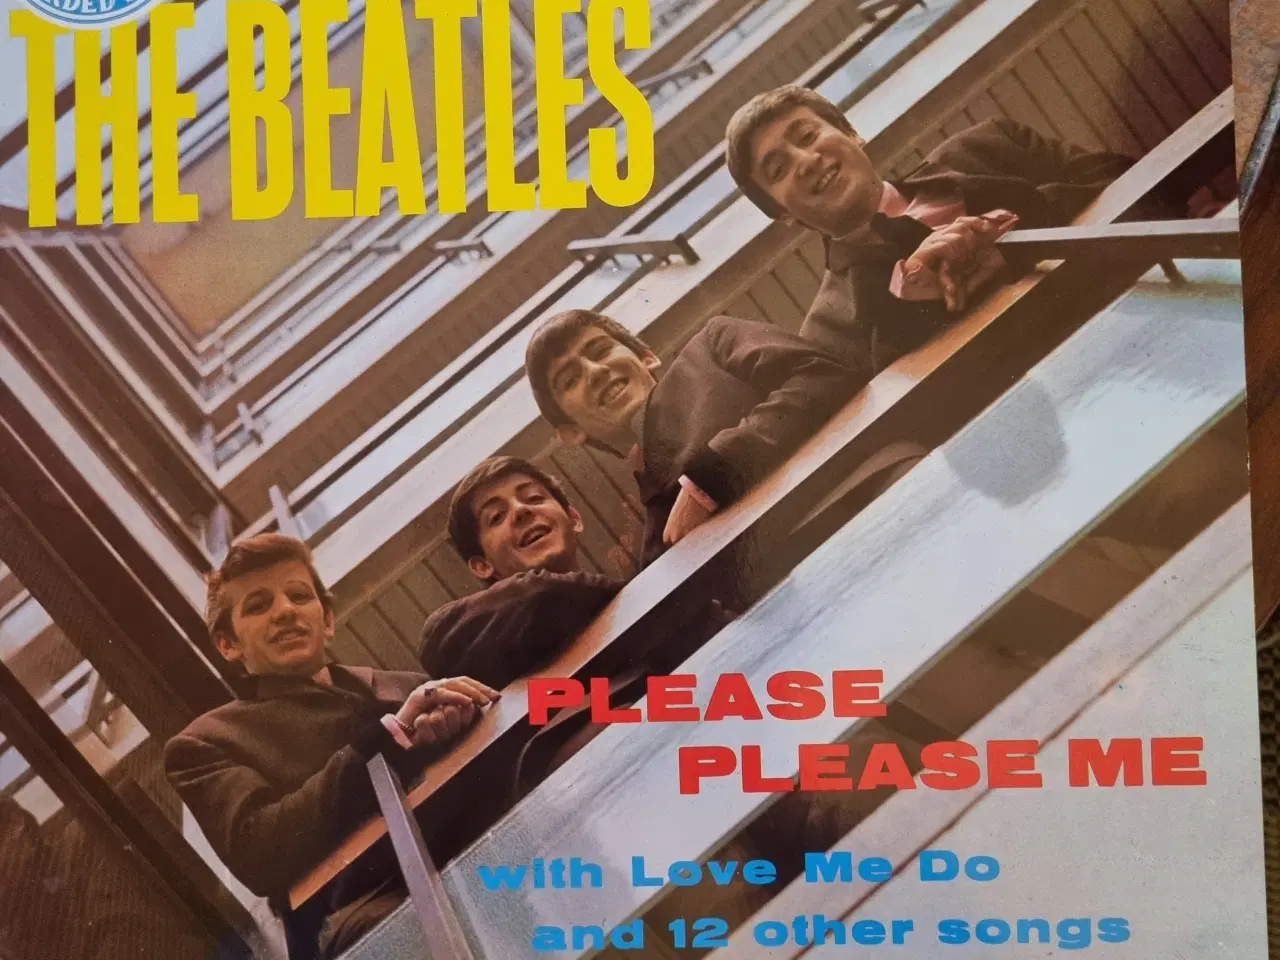 Billede 11 - The Beatles Collection Lp boks 